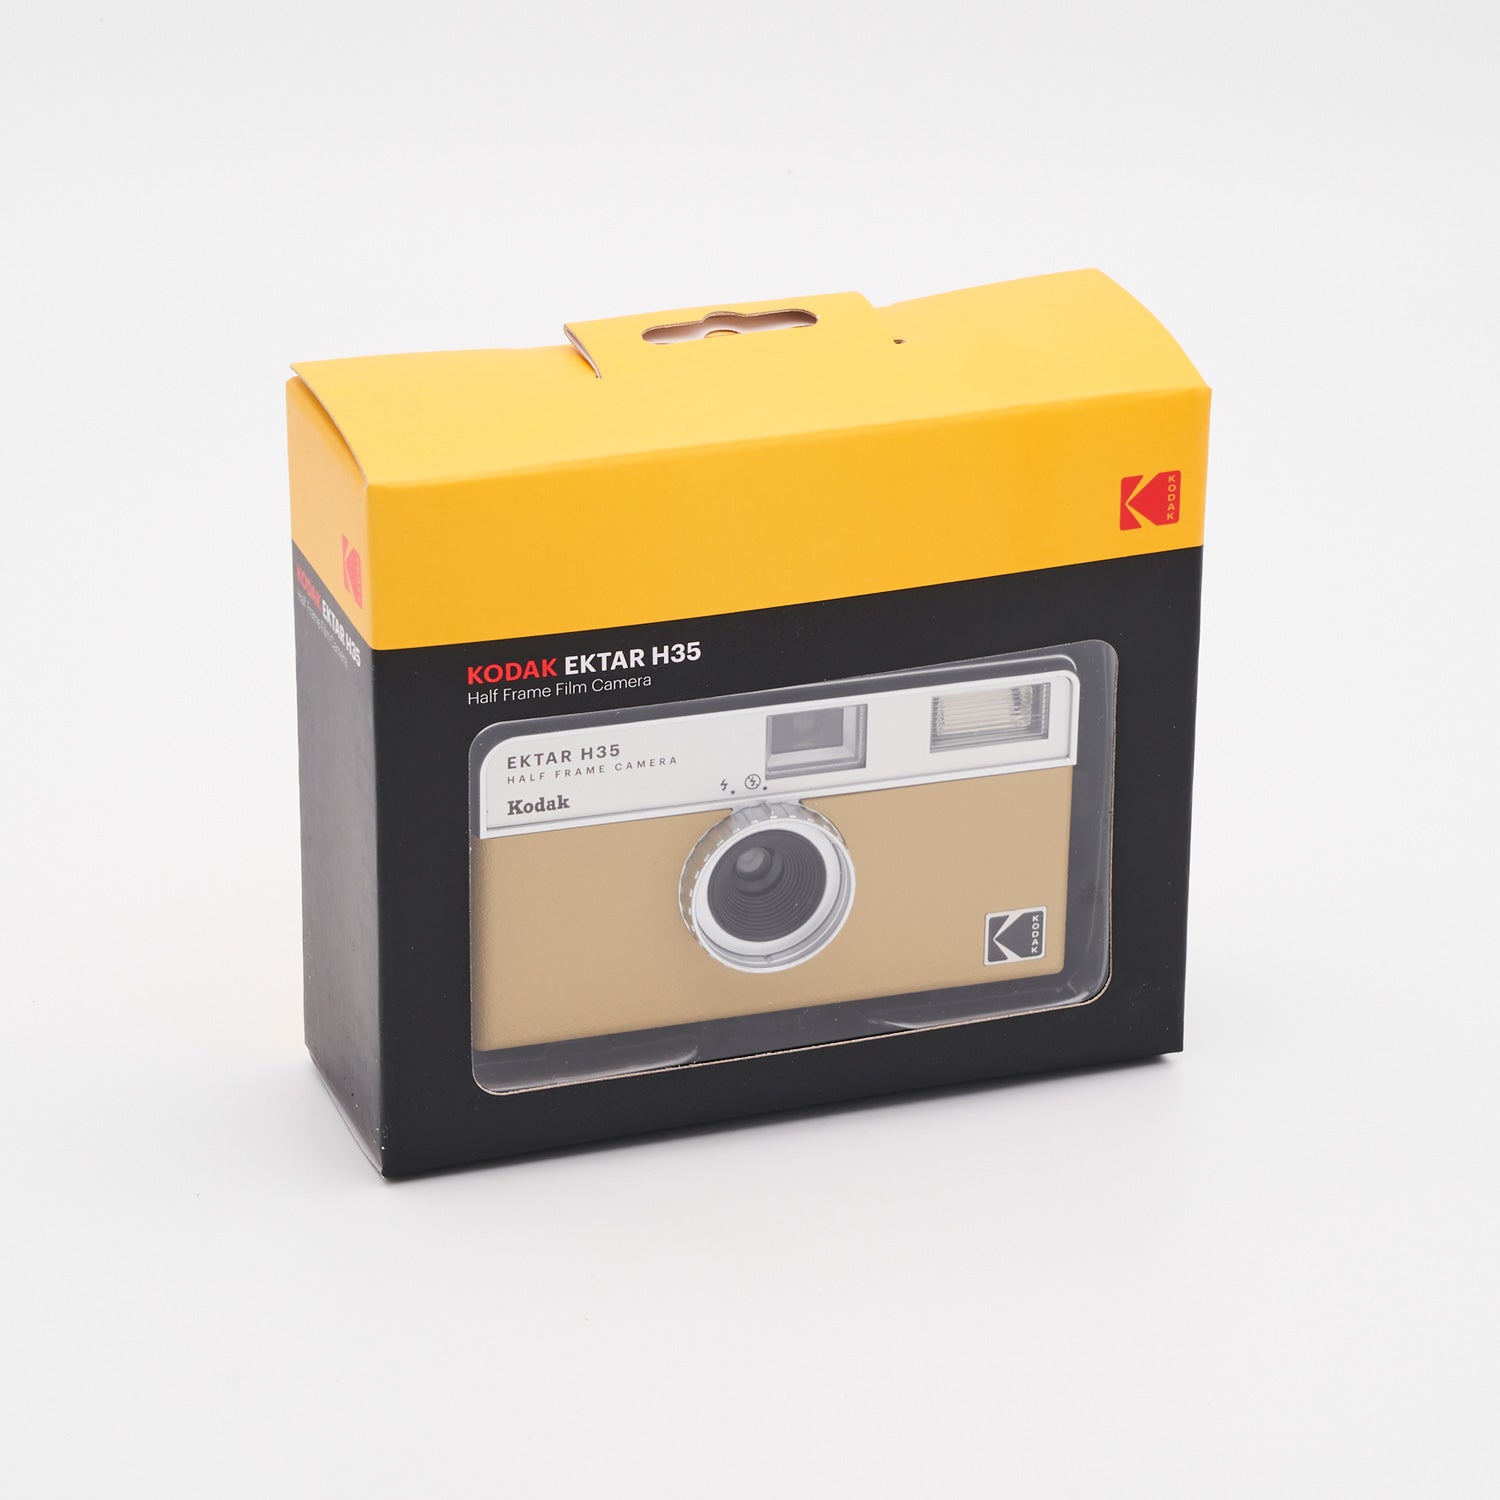 Kodak Ektar H35 Half Frame